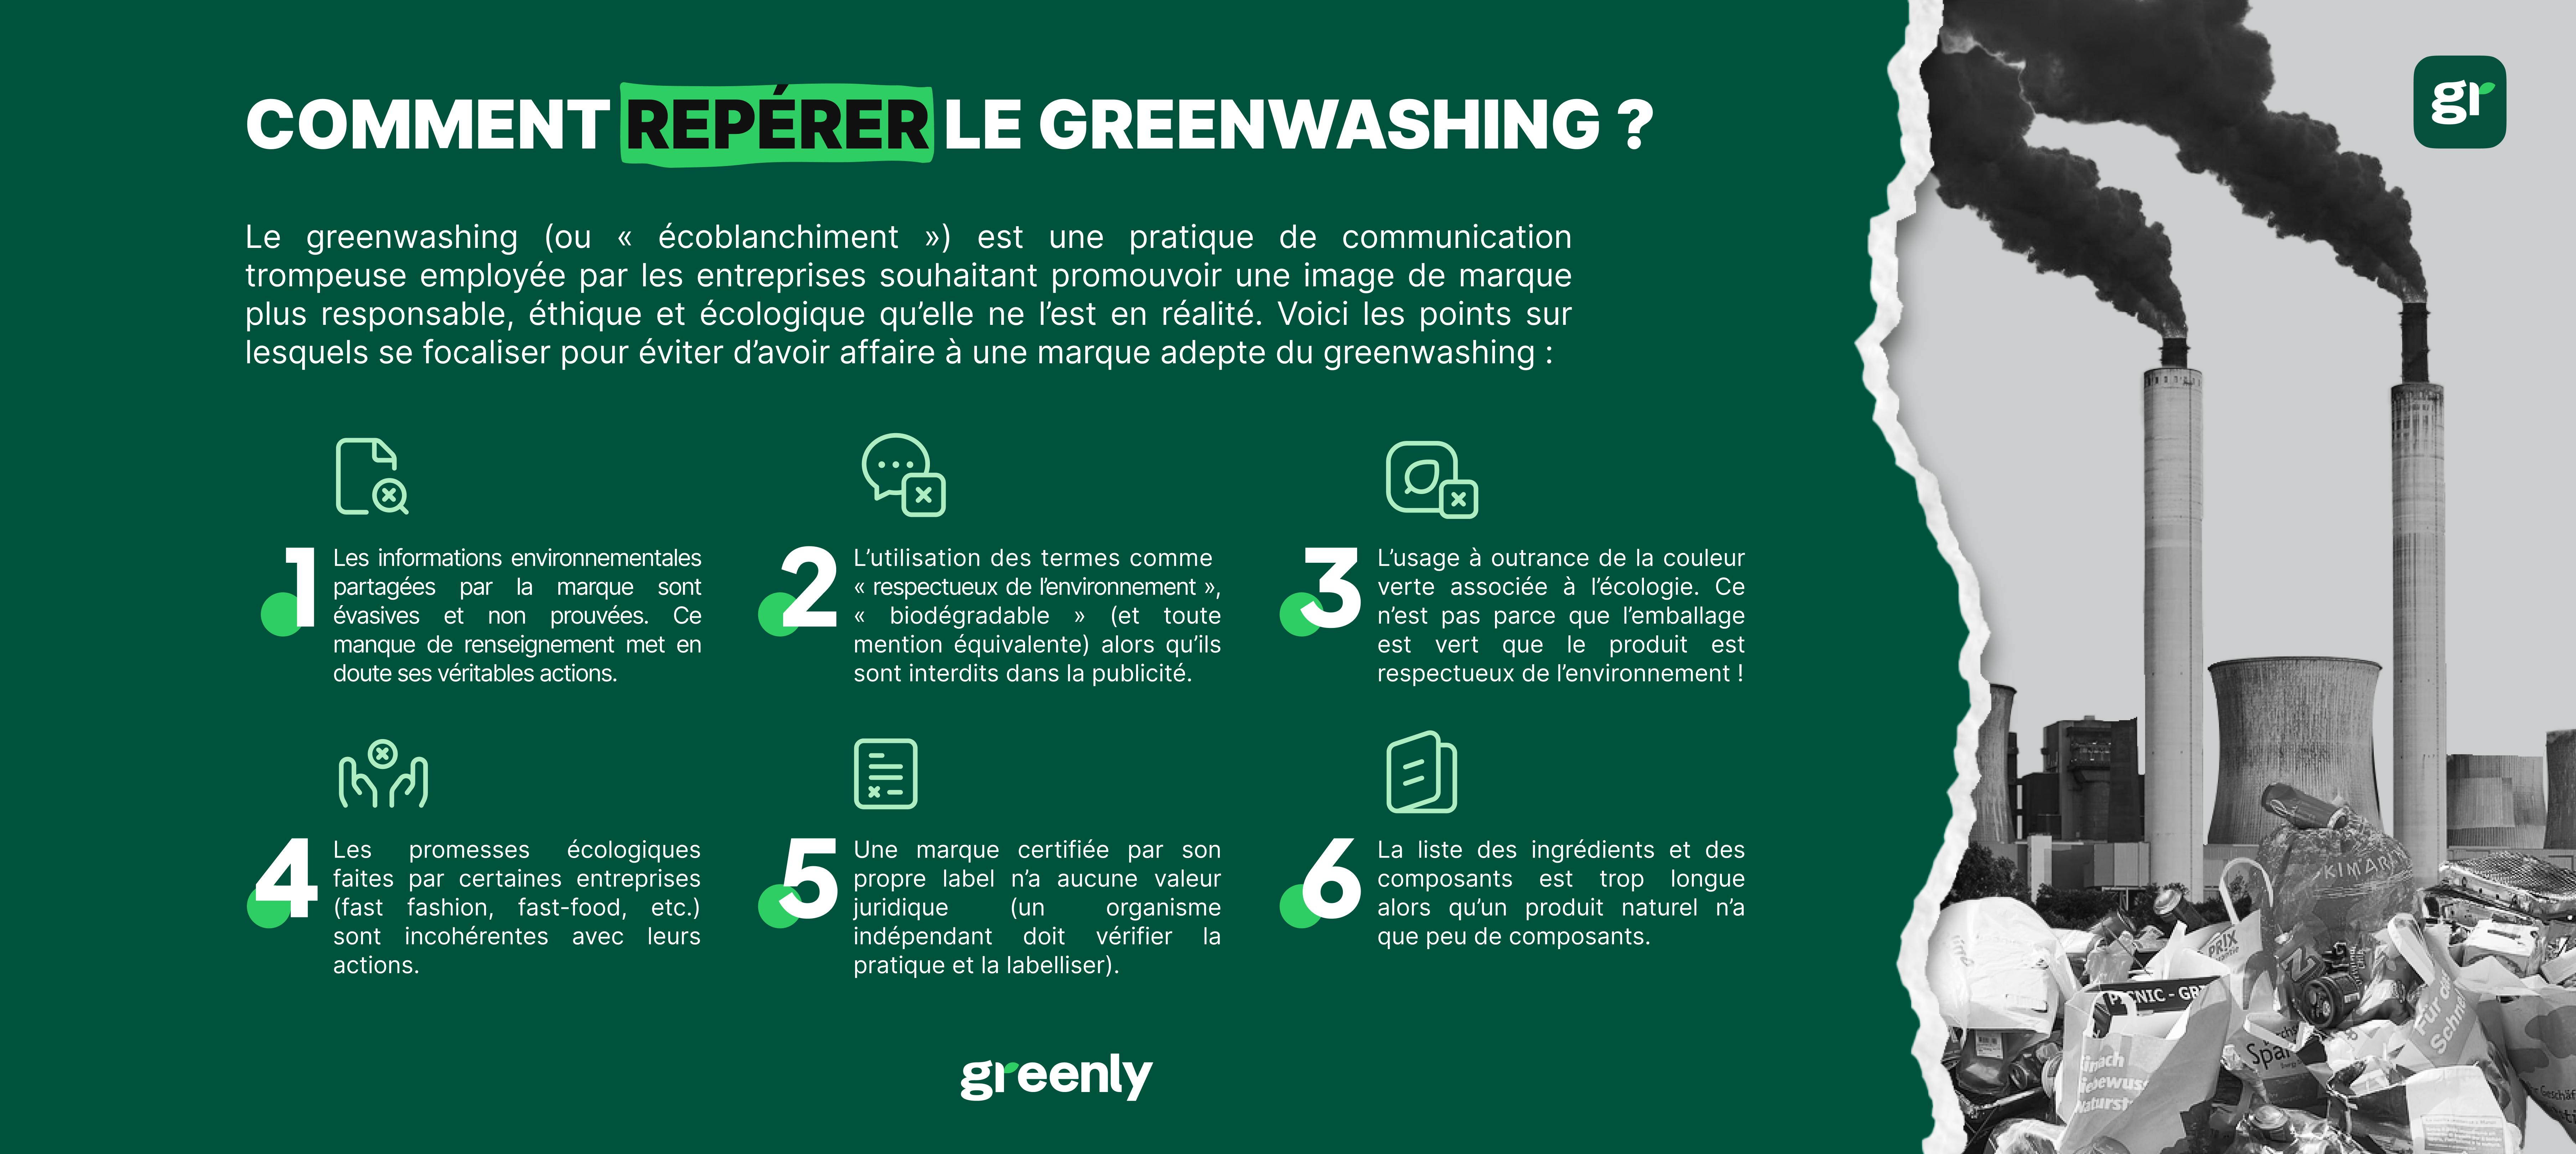 Infographie pour répérer le greenwashing